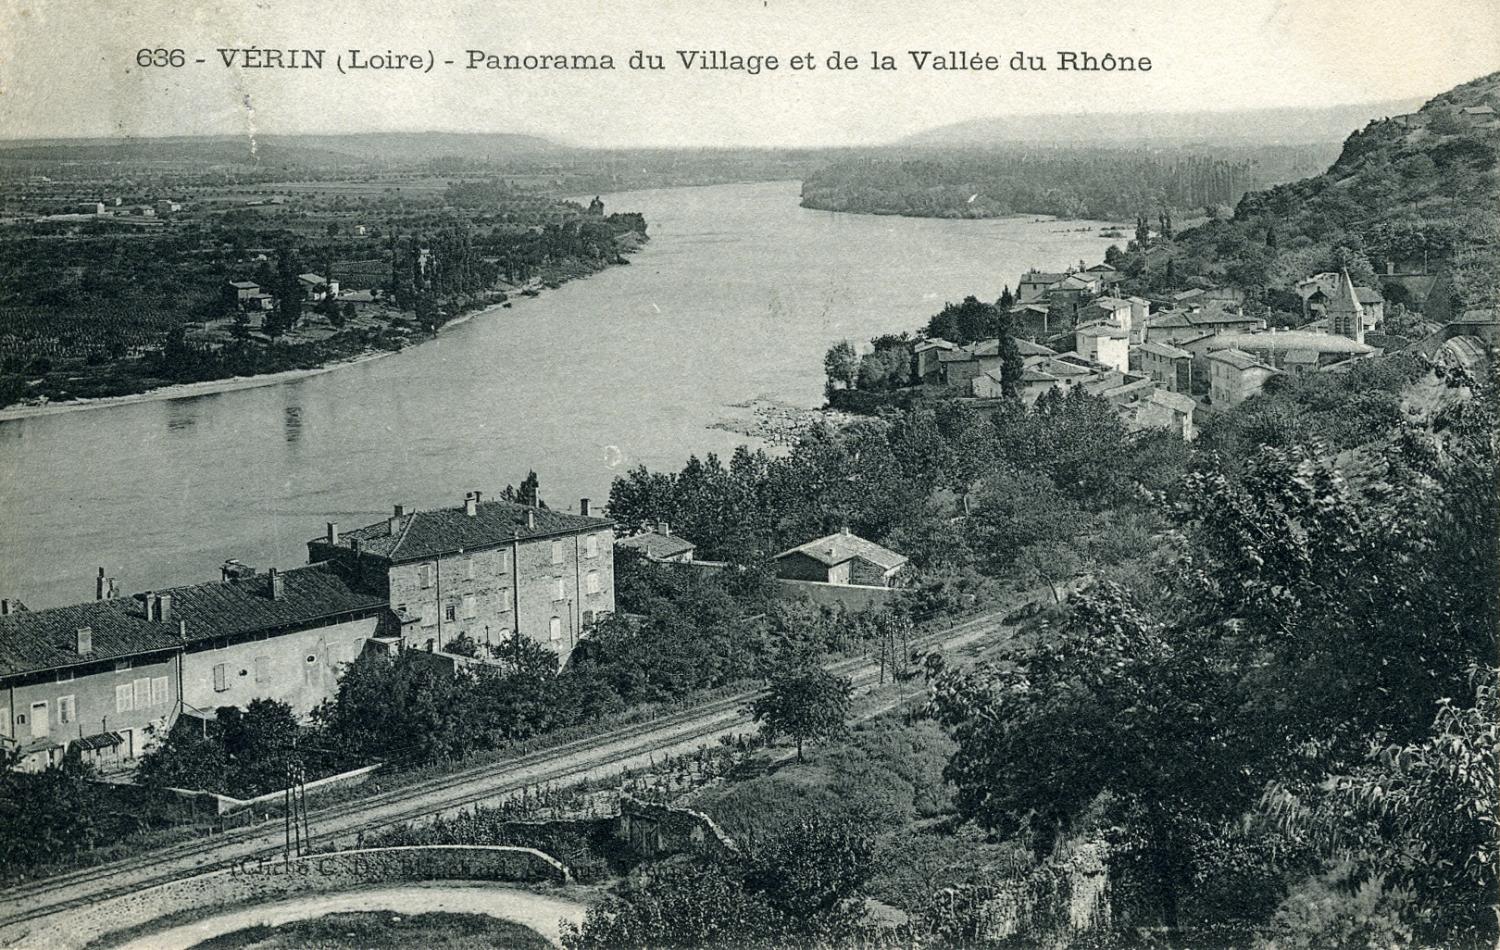 Vérin (Loire)